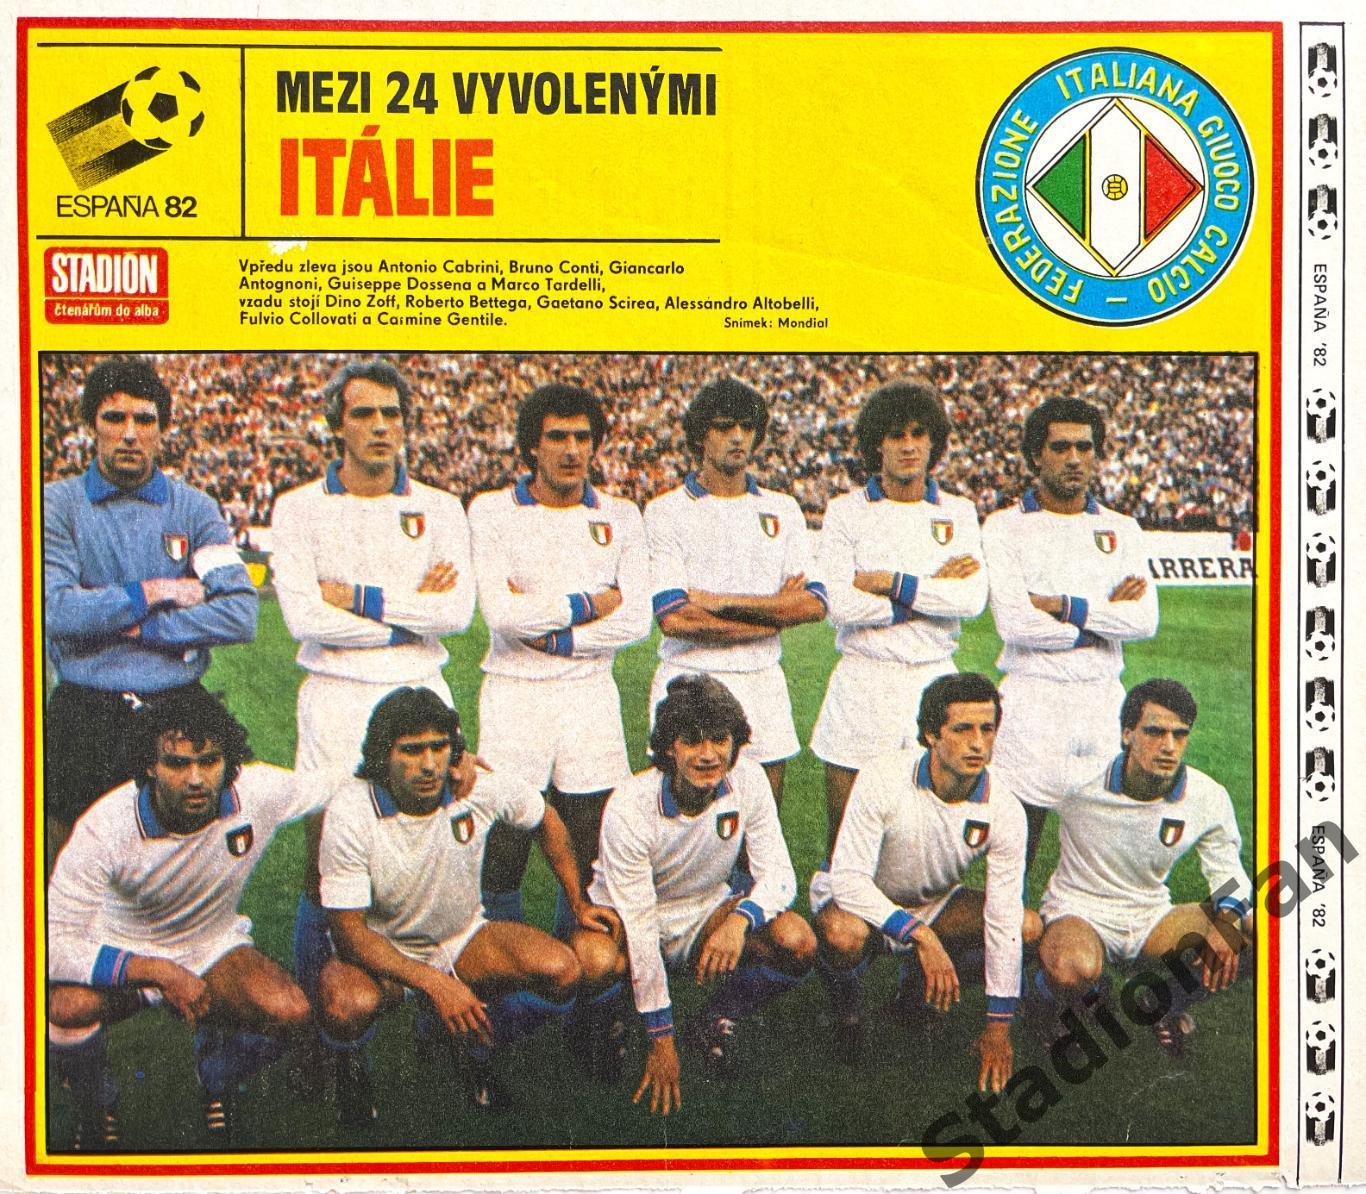 Постер из журнала Stadion (Стадион) - Italie 1982